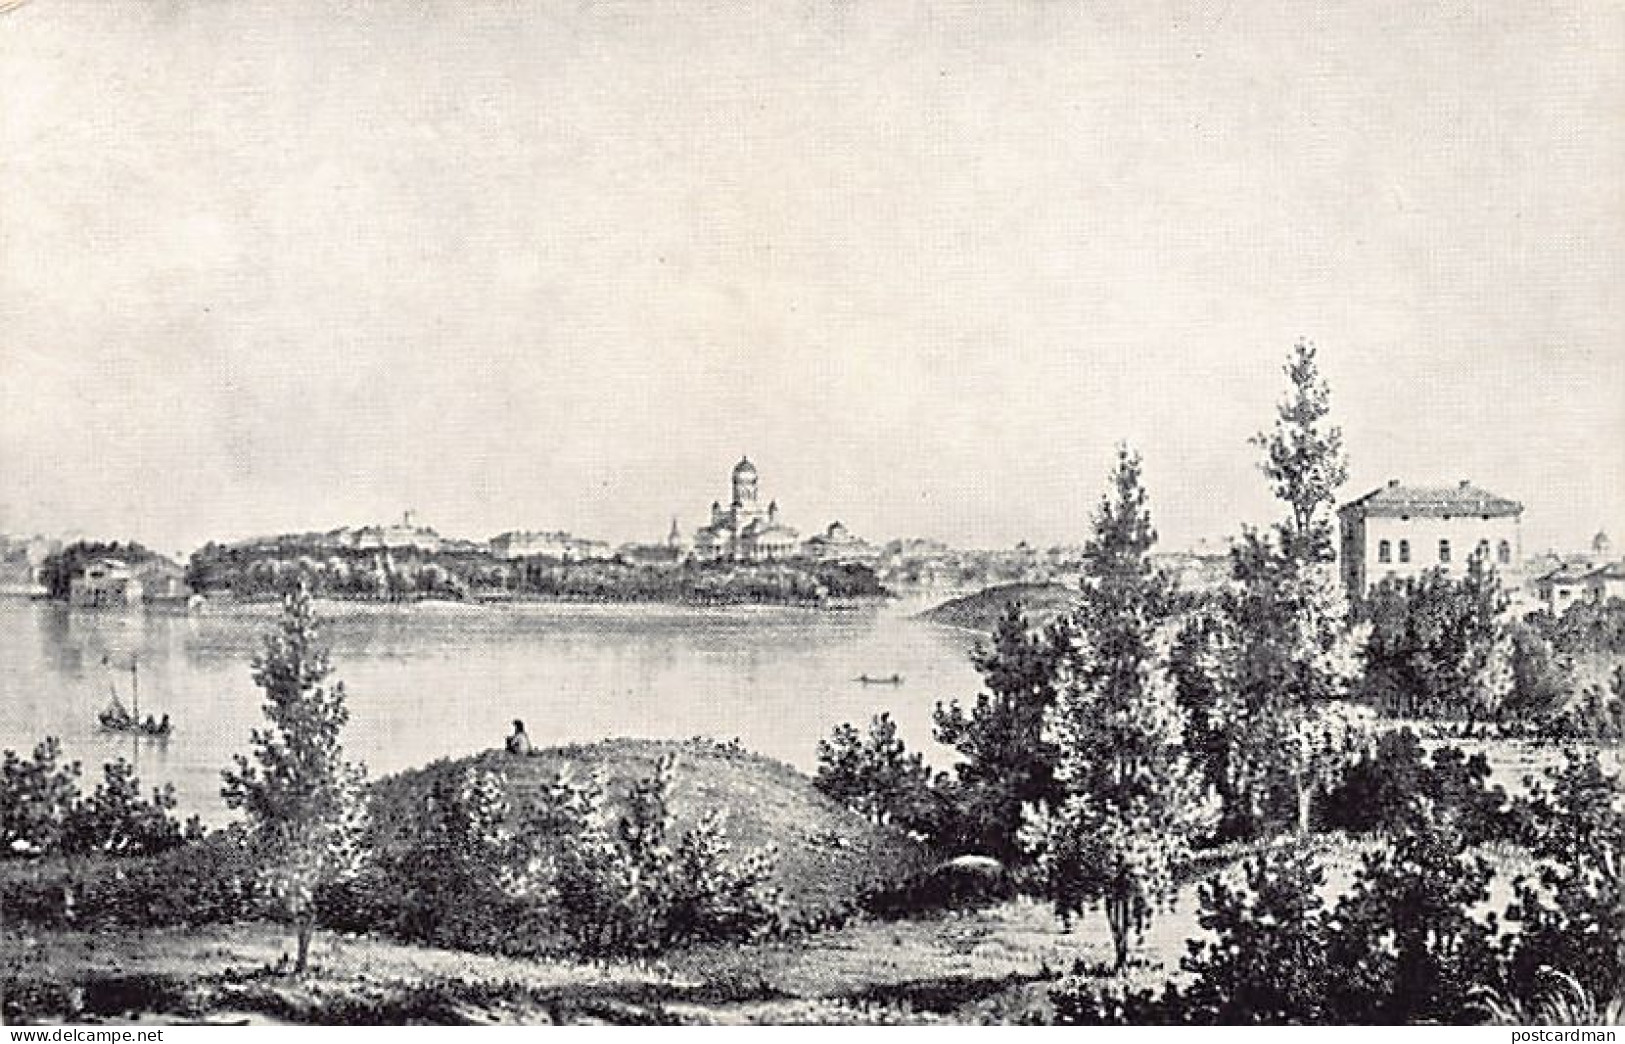 Finland - Helsinki Töölöstä Nähtynä Ja Hakasalmen Huvil - F. Liewendal Lit. 1859 - Finlande